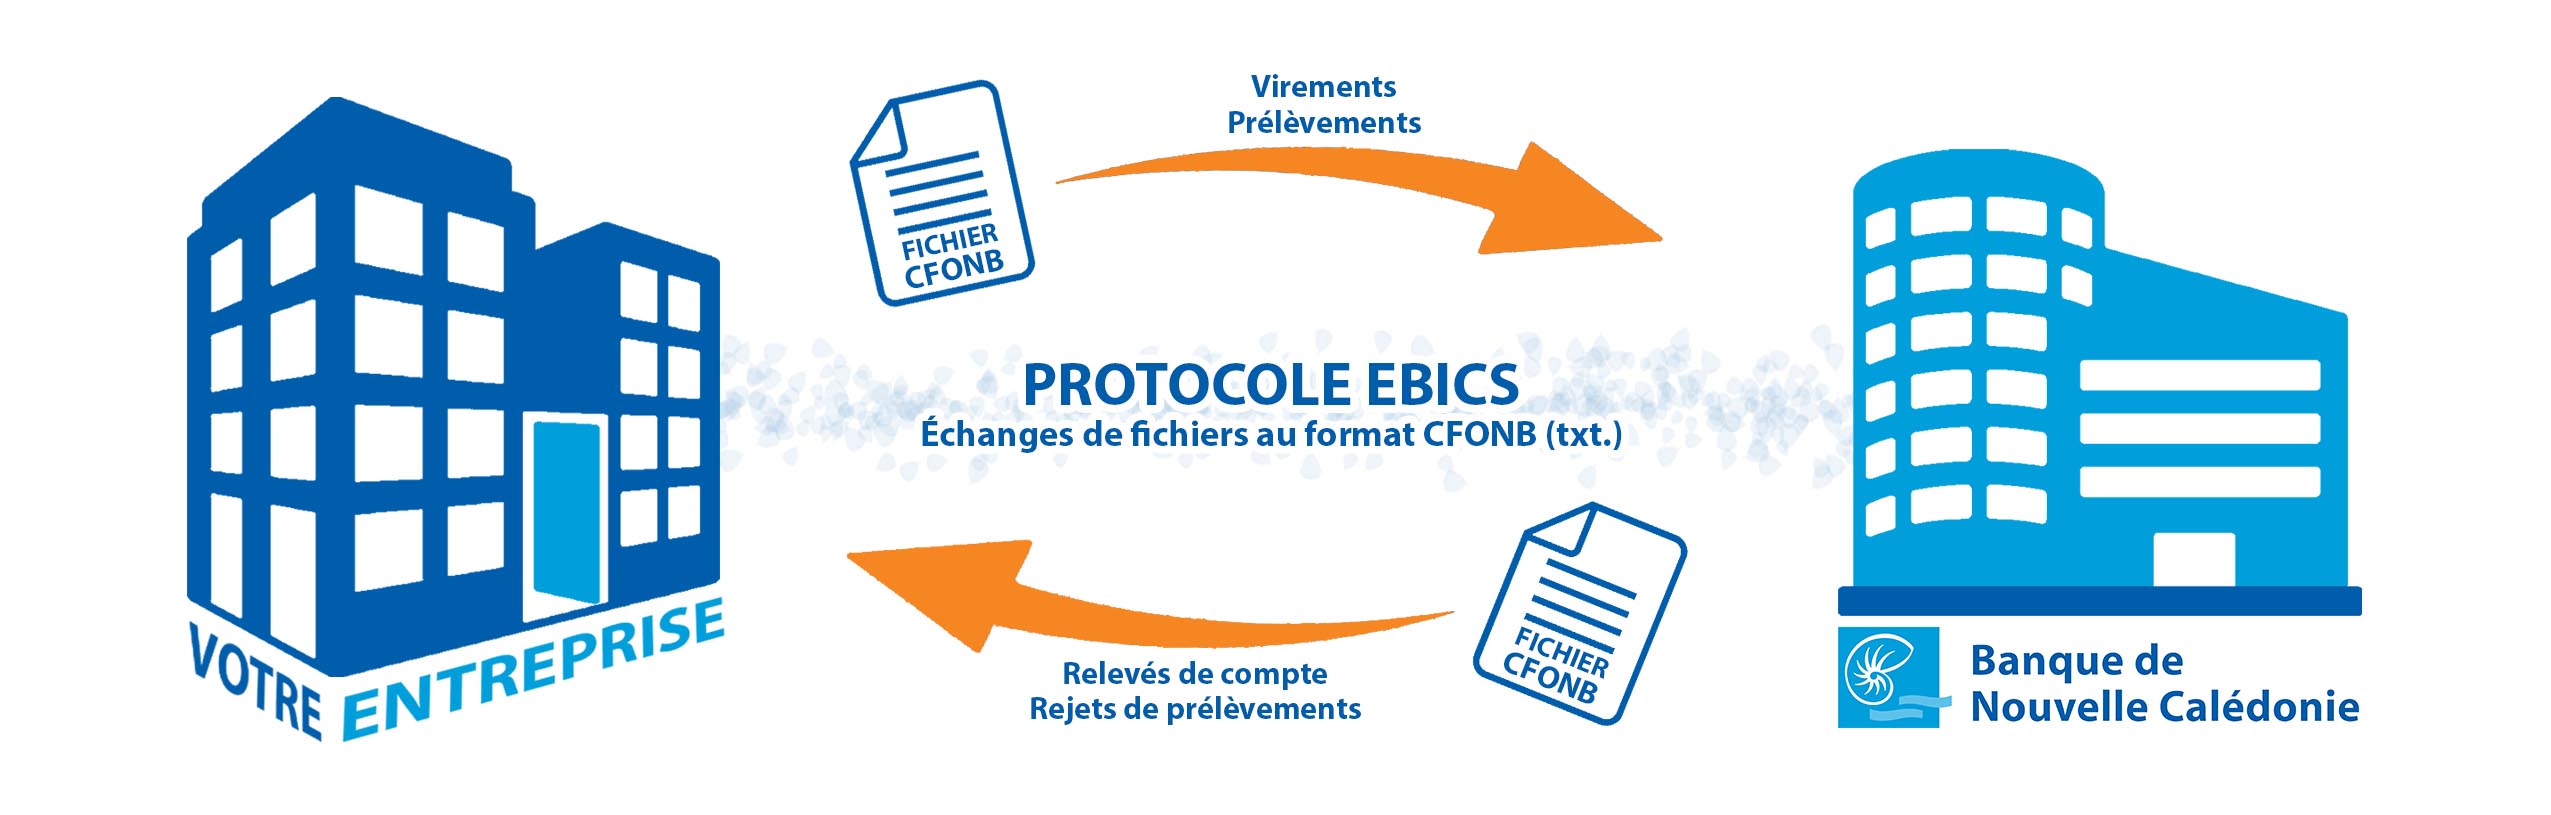 Protocole EBICS v1